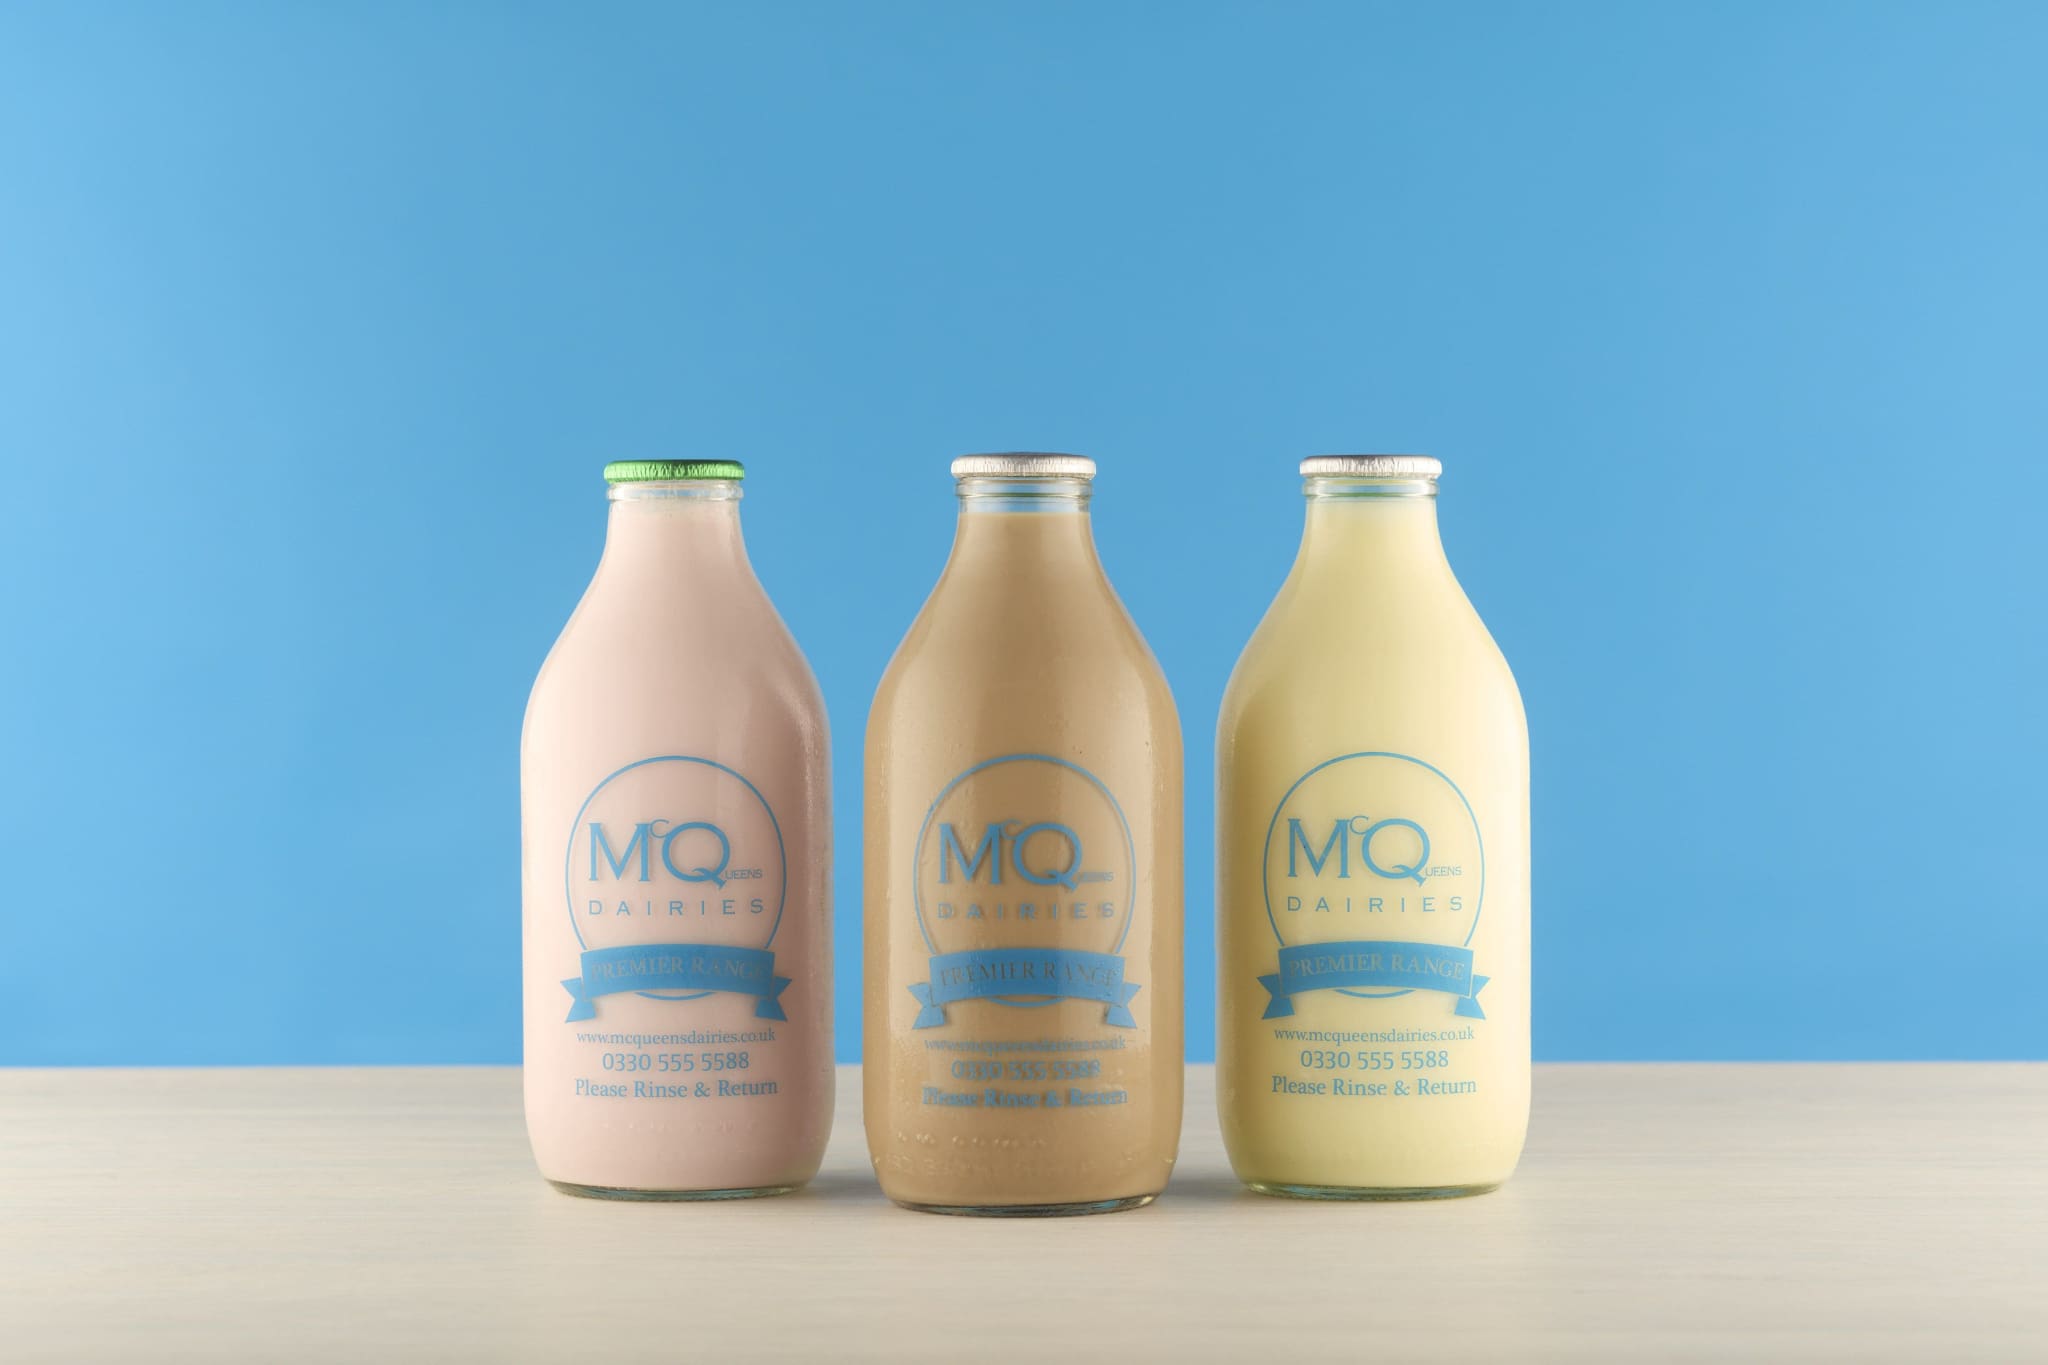 McQueens Dairies Flavoured Milk